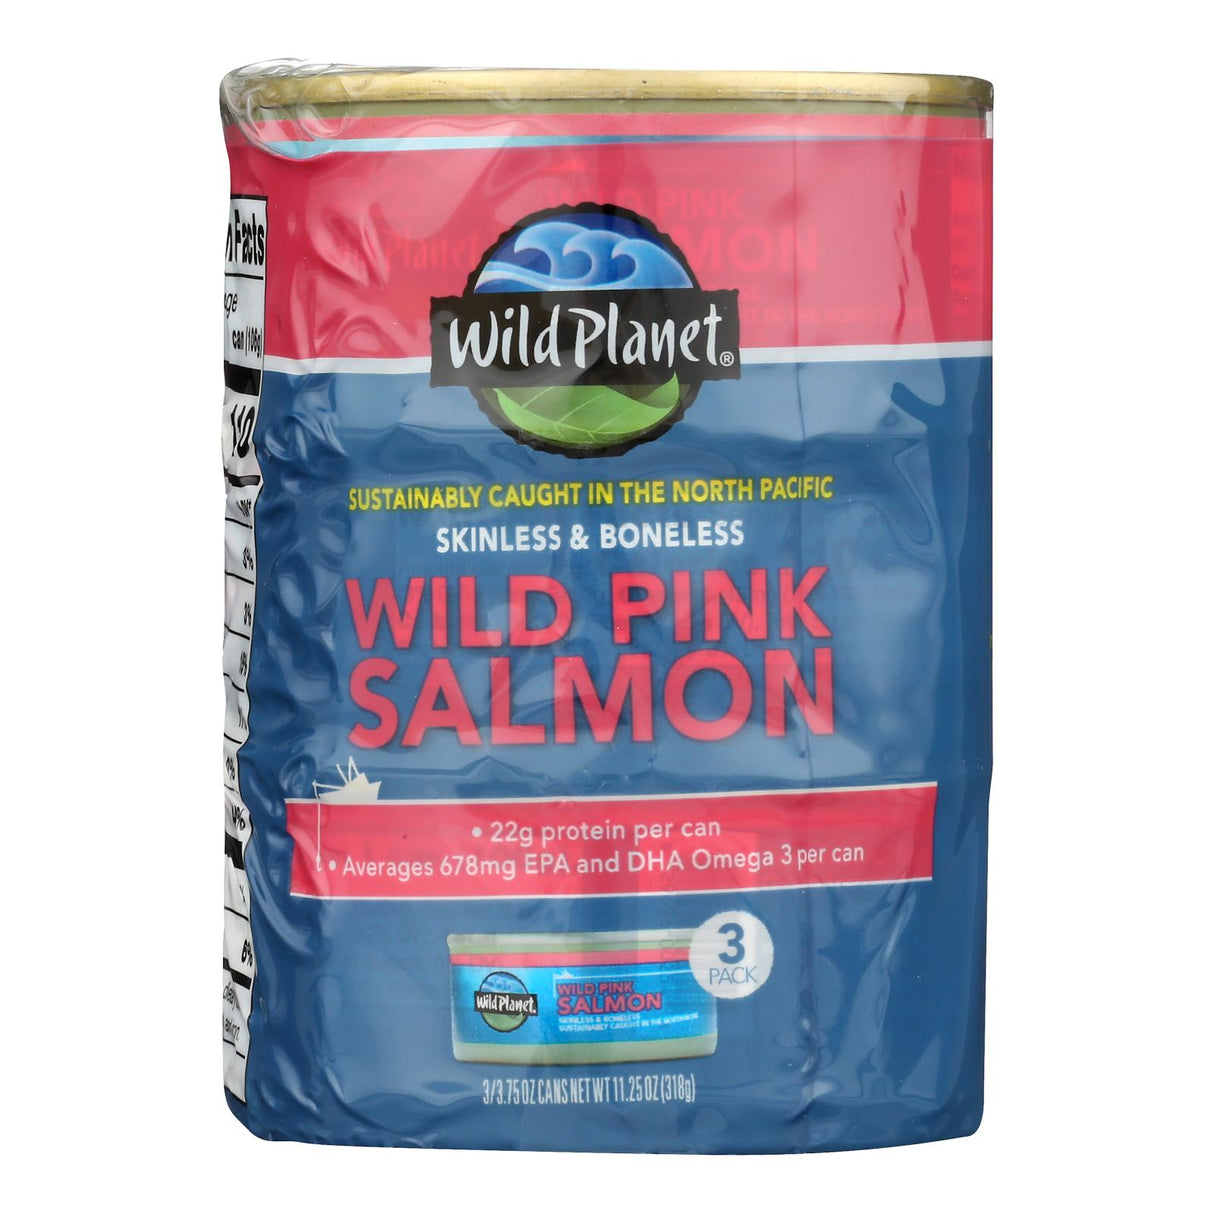 Wild Planet Wild Pink Salmon, Boneless, Skinless - 3.75 oz, Case of 12 - Cozy Farm 